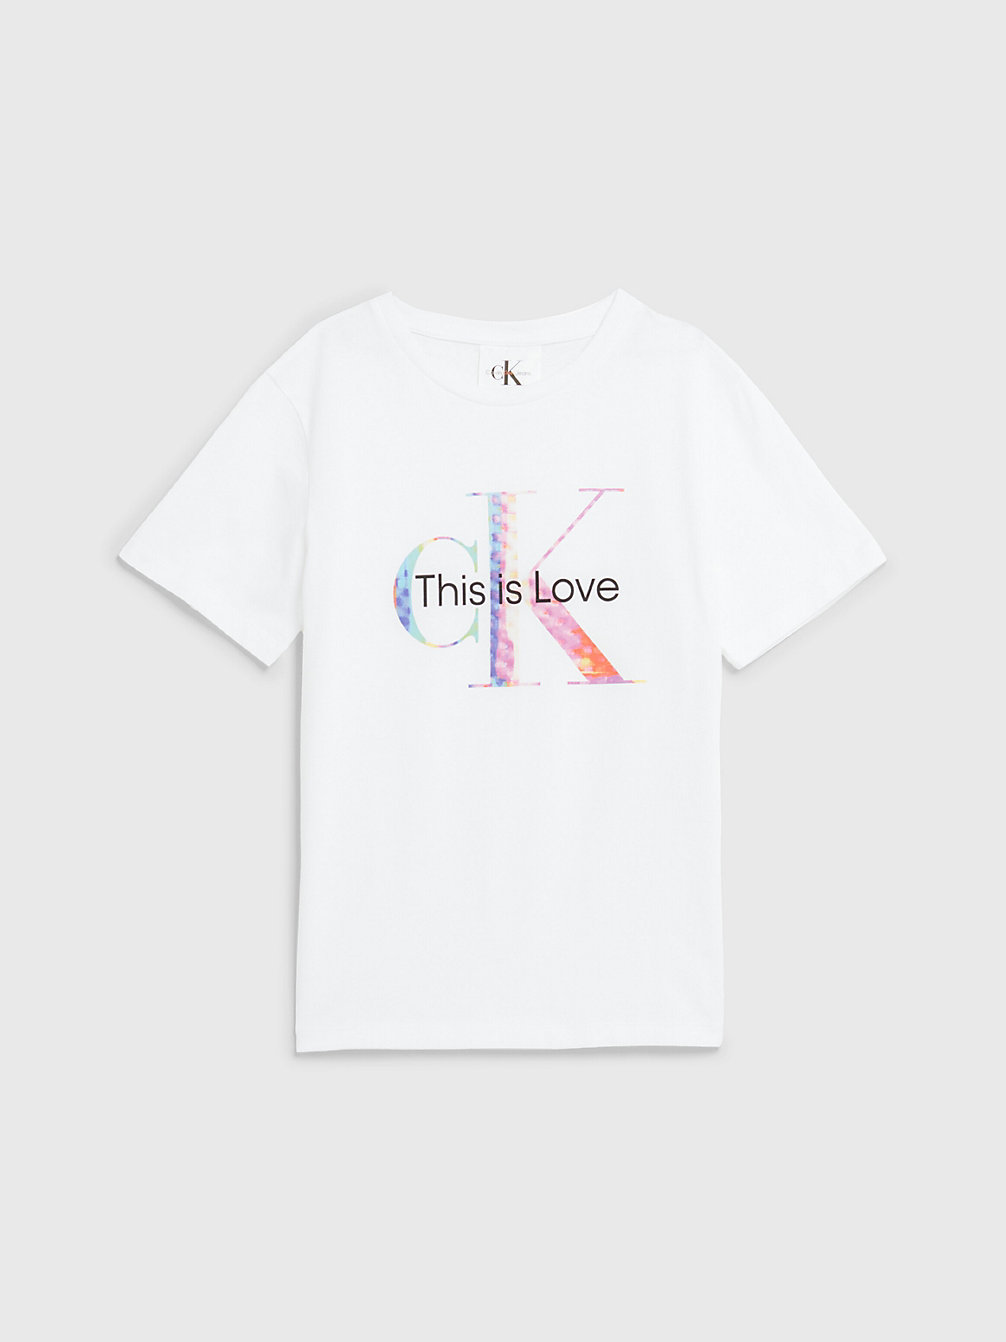 BRIGHT WHITE Unisex Pride Logo T-Shirt - Pride undefined kids unisex Calvin Klein